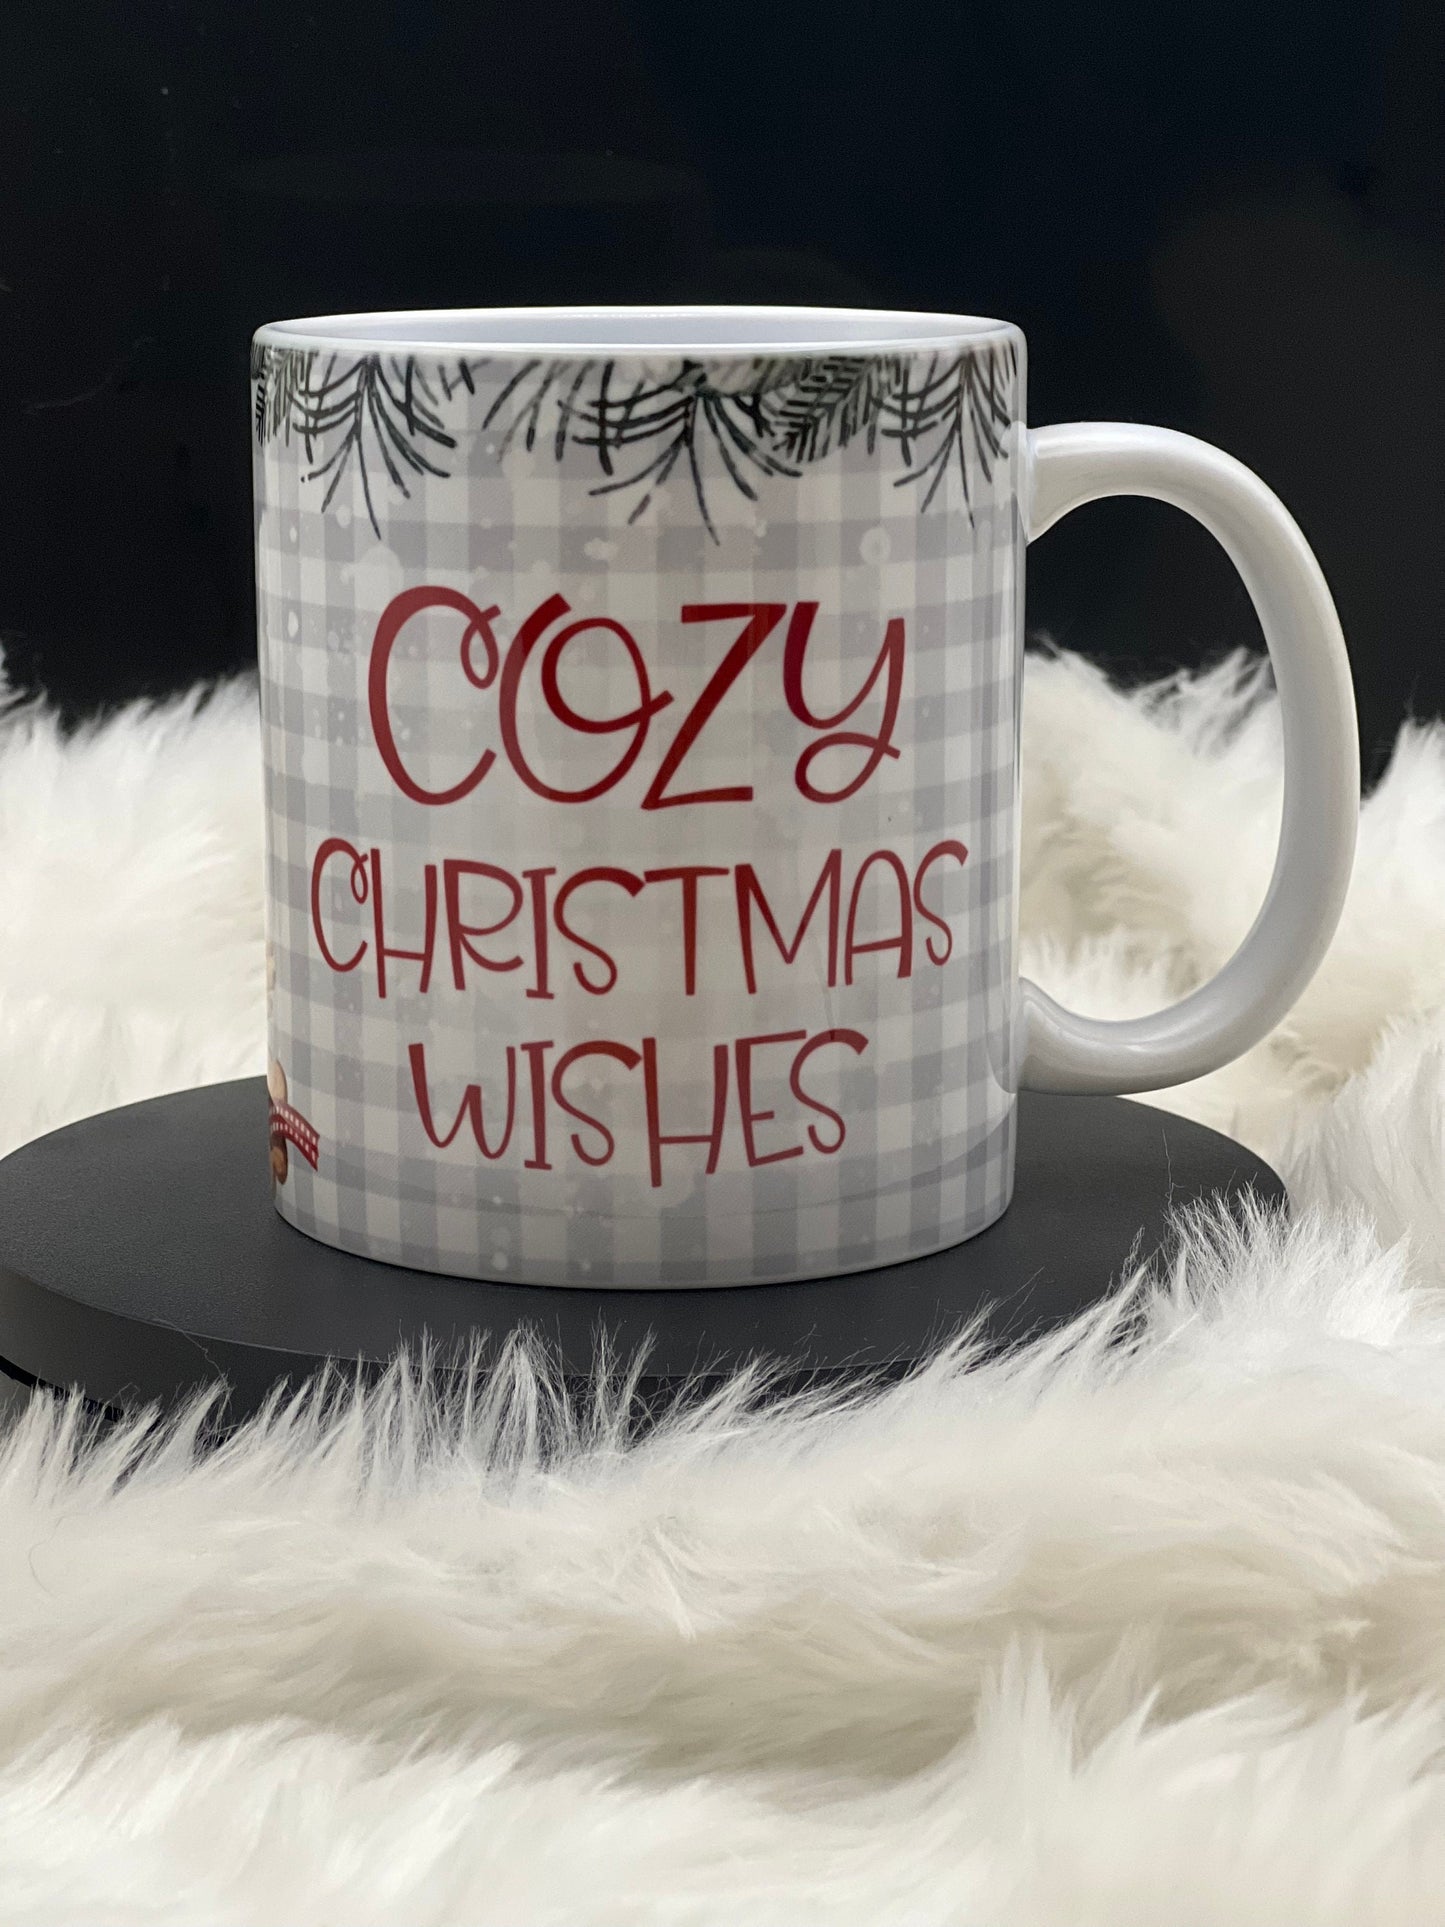 Merry Christmas wishes mug